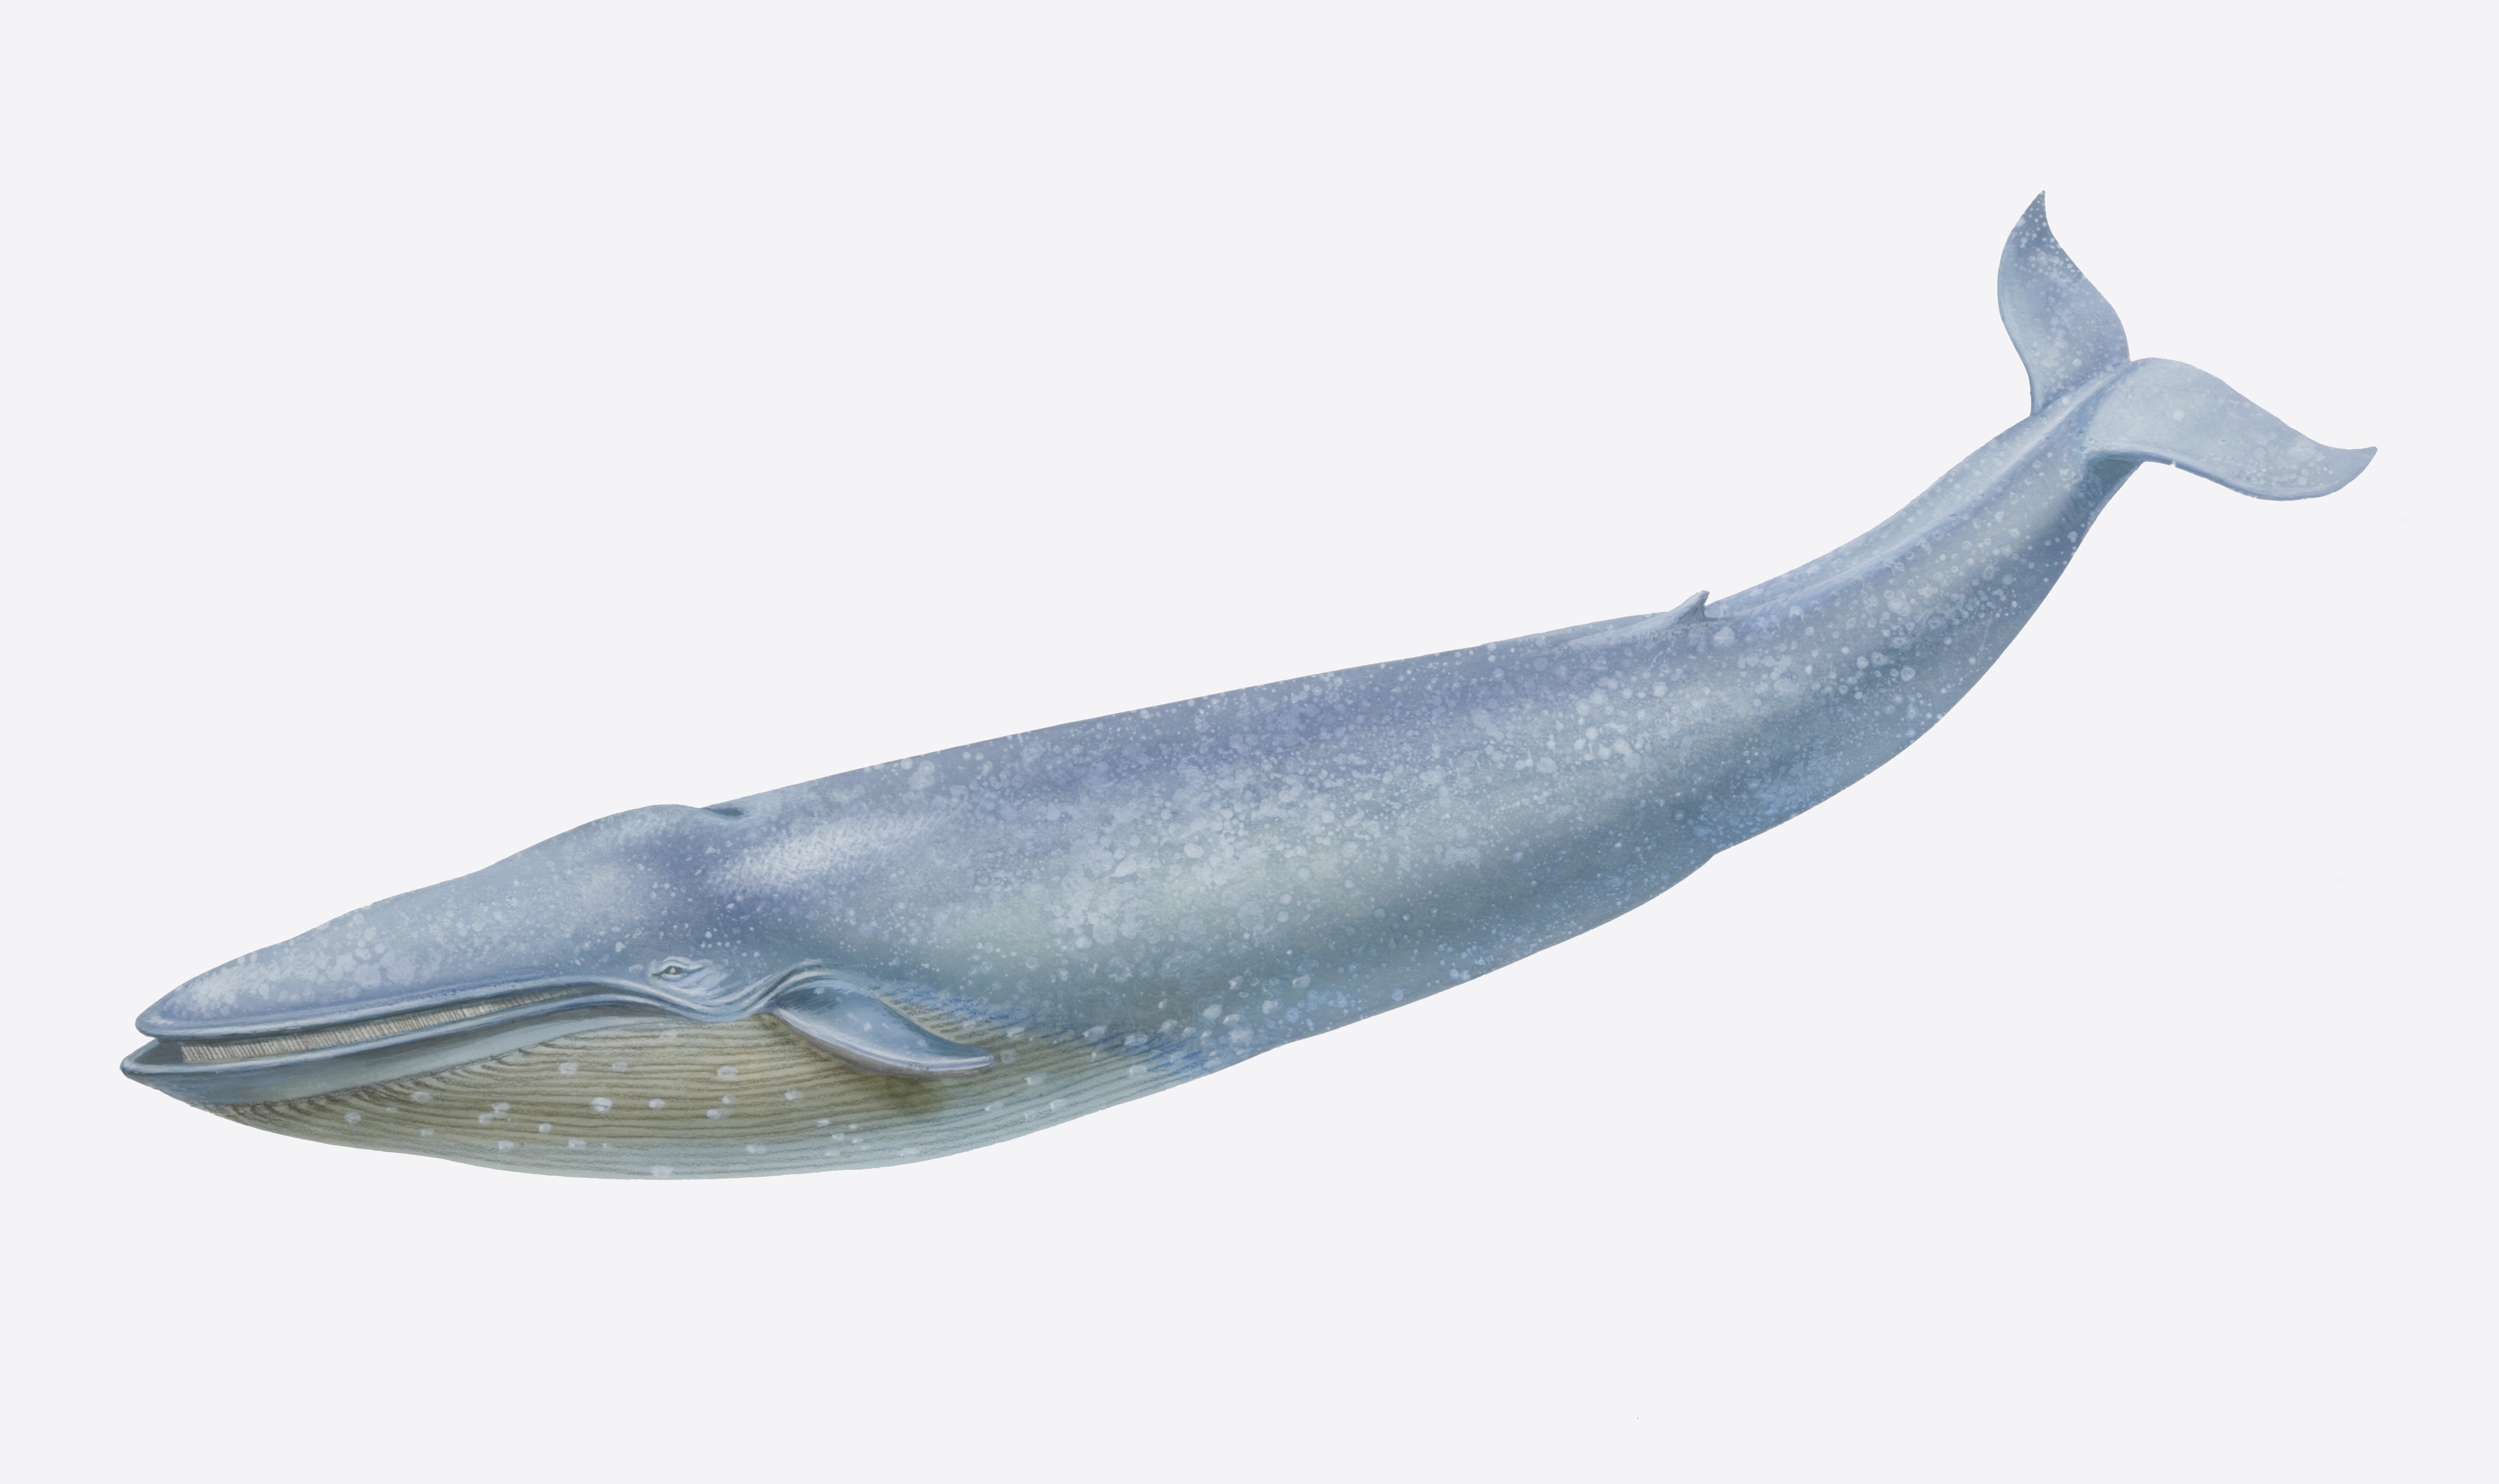 mavi balinanın başları geniş ve büyüktür.